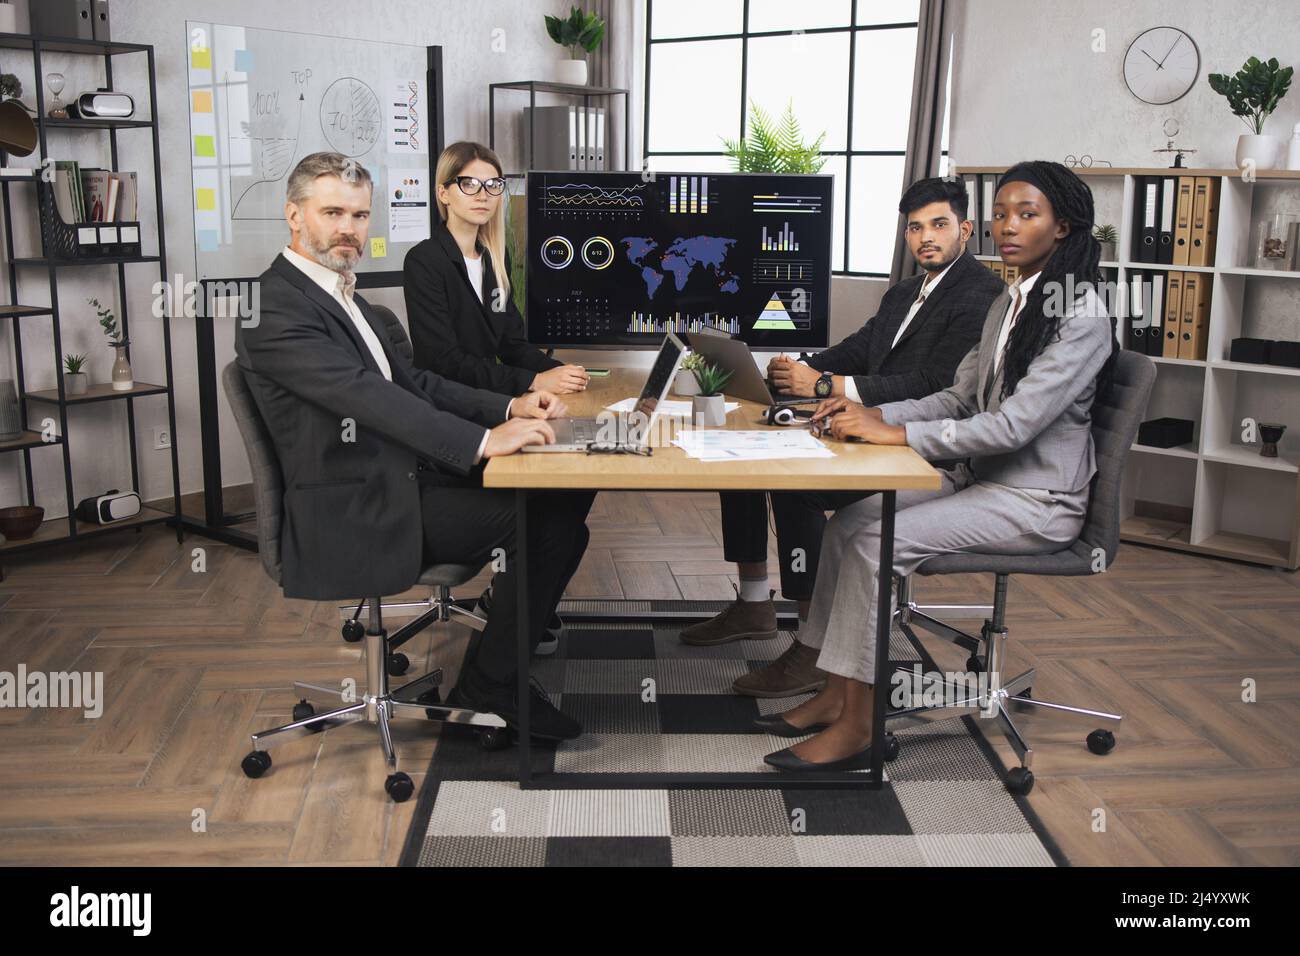 Das Team aus vier verschiedenen multiethnischen Geschäftsleuten trifft sich im Sitzungssaal des Innenbüros, sitzt mit Tablets und Laptop am Schreibtisch, vor einem riesigen Plasma-TV-Bildschirm und blickt auf die Kamera. Stockfoto